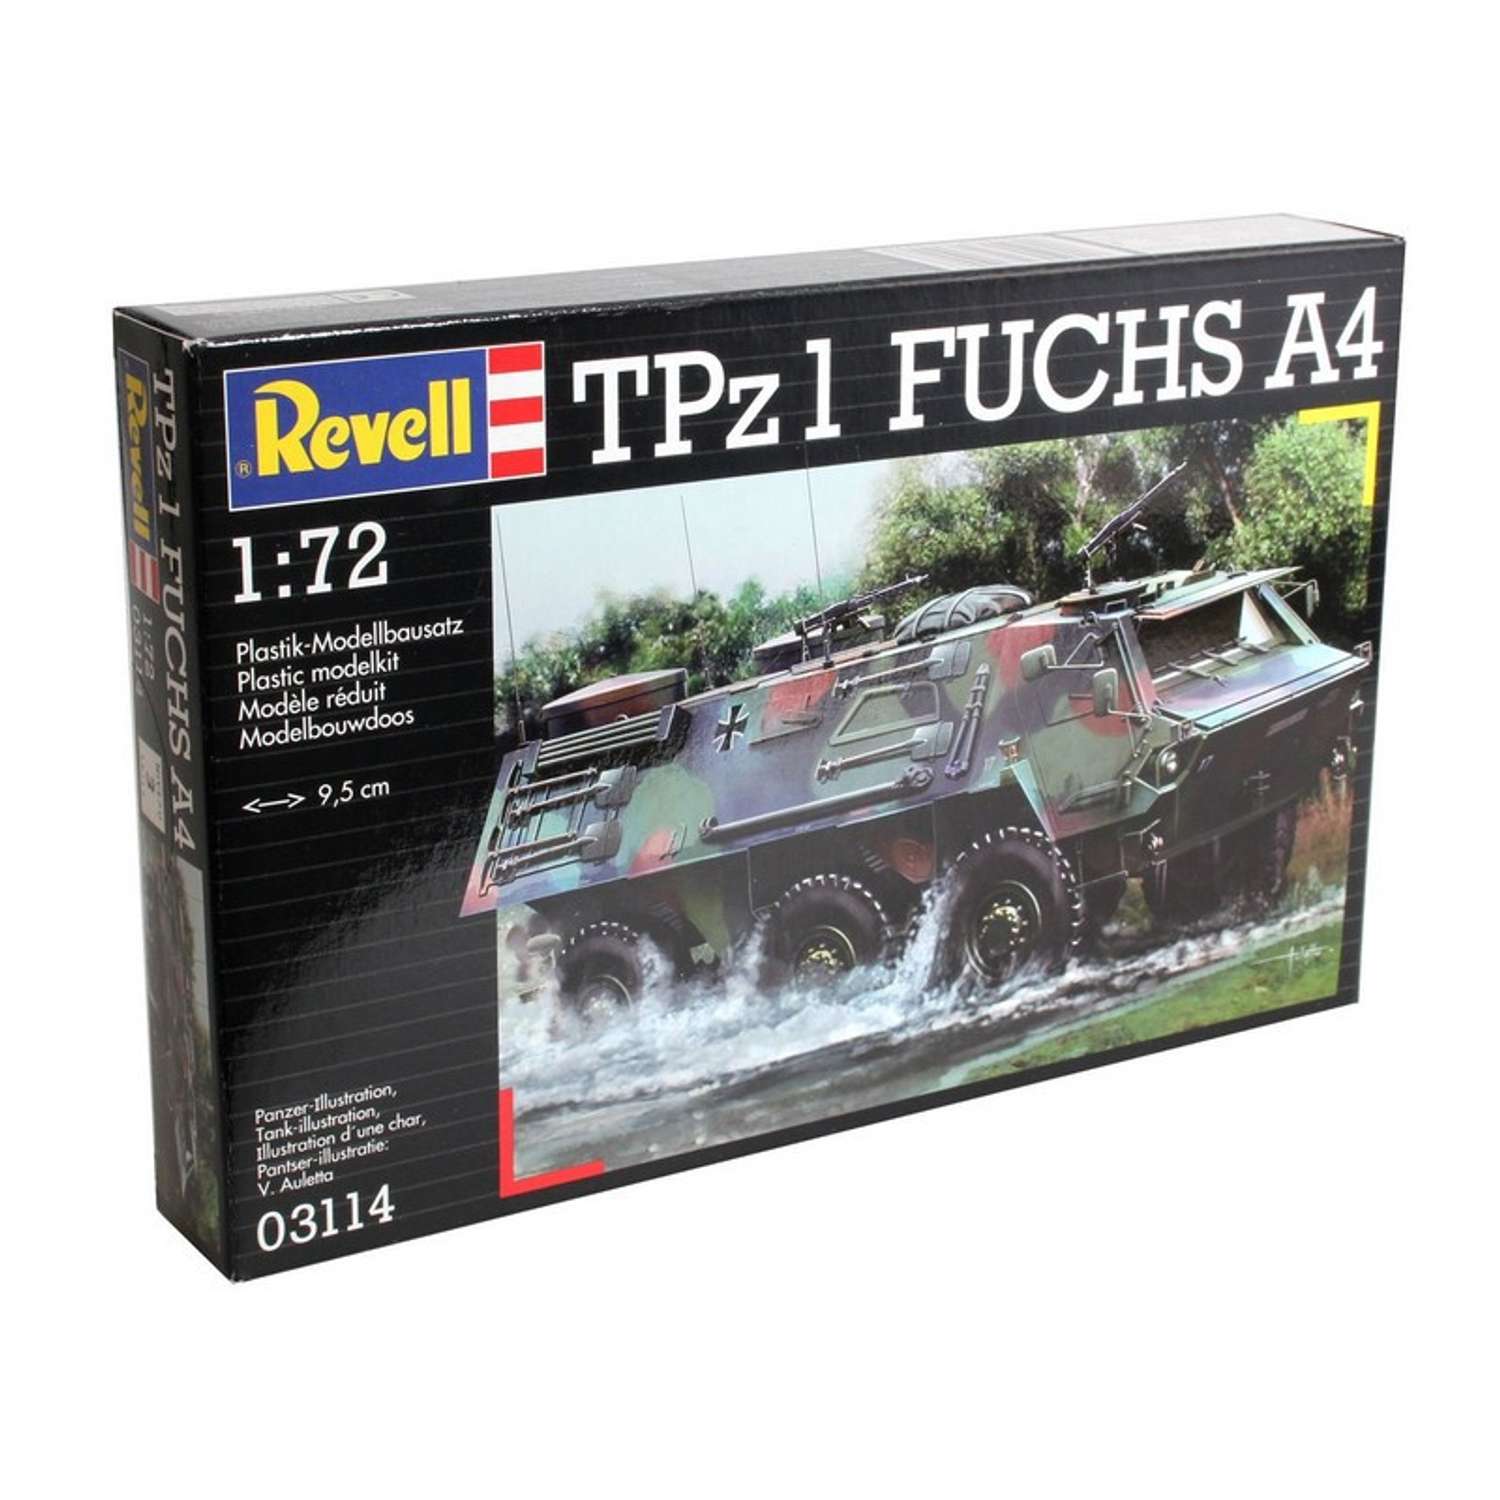 Танк Revell TPZ 1 Fuchs a 4 1:72 3114 - фото 1